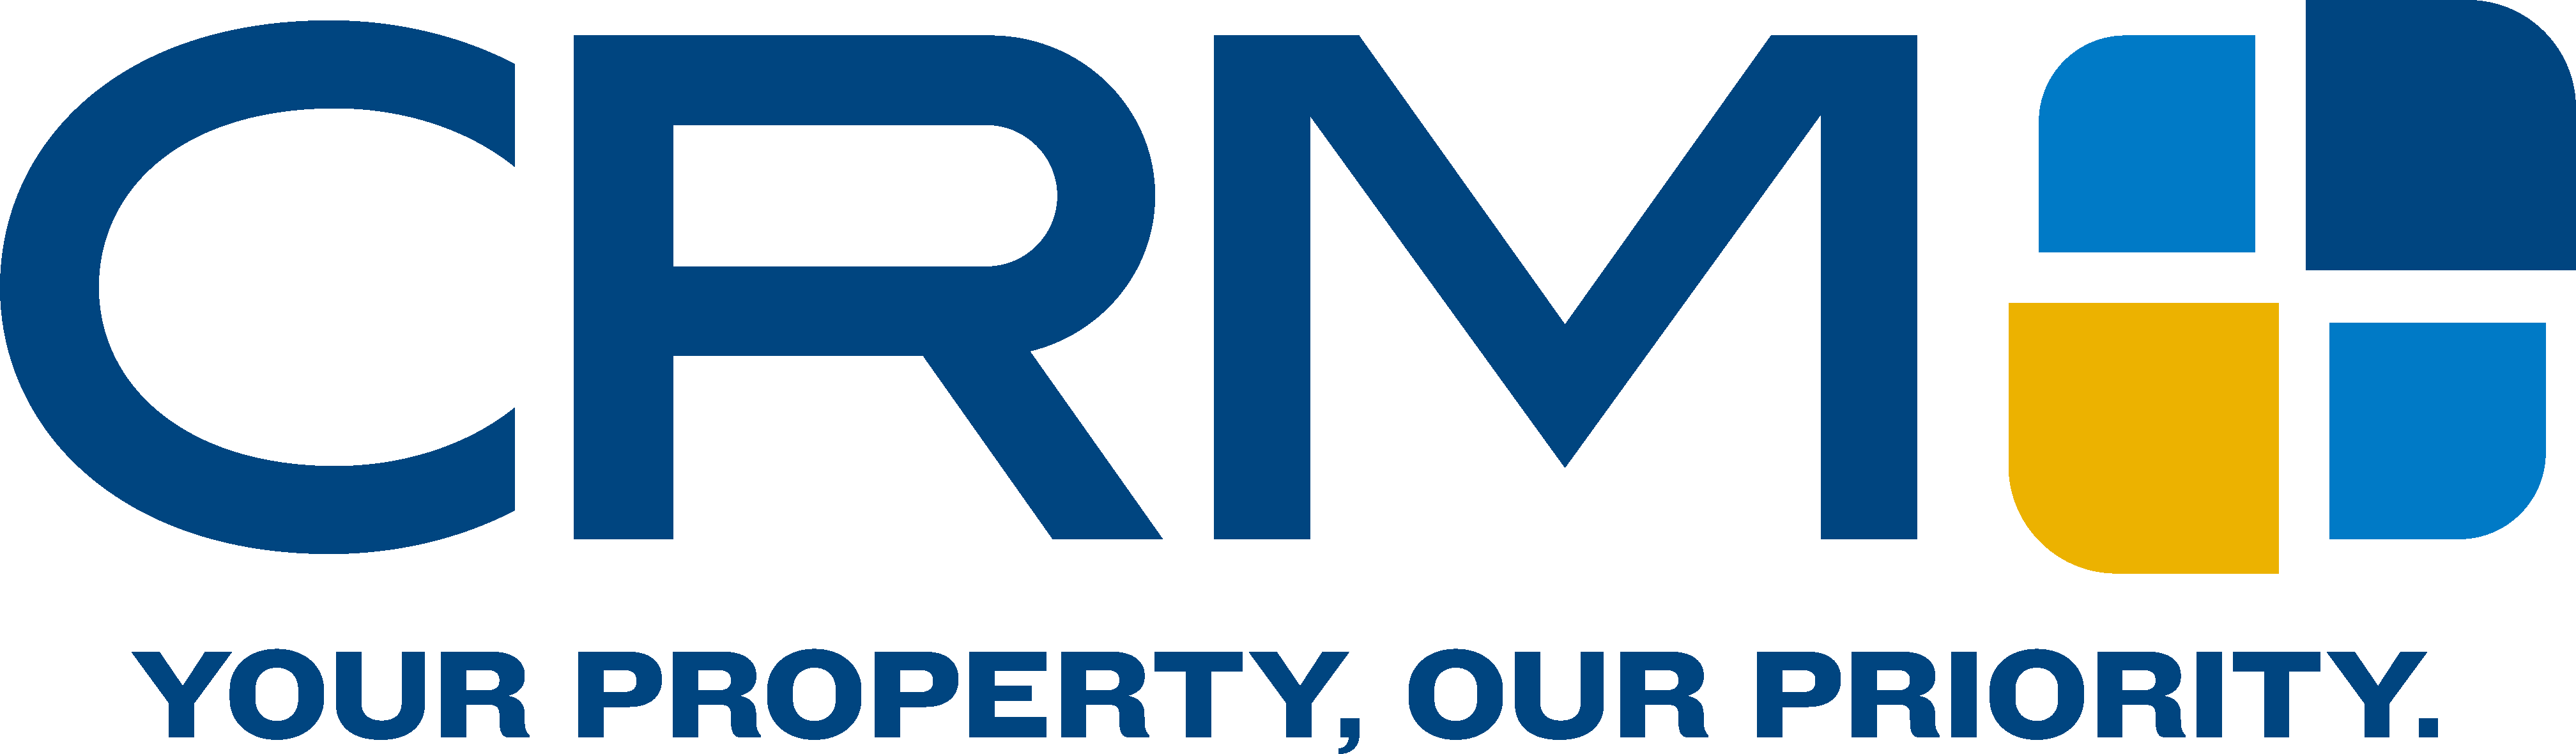 CRM Services Logo